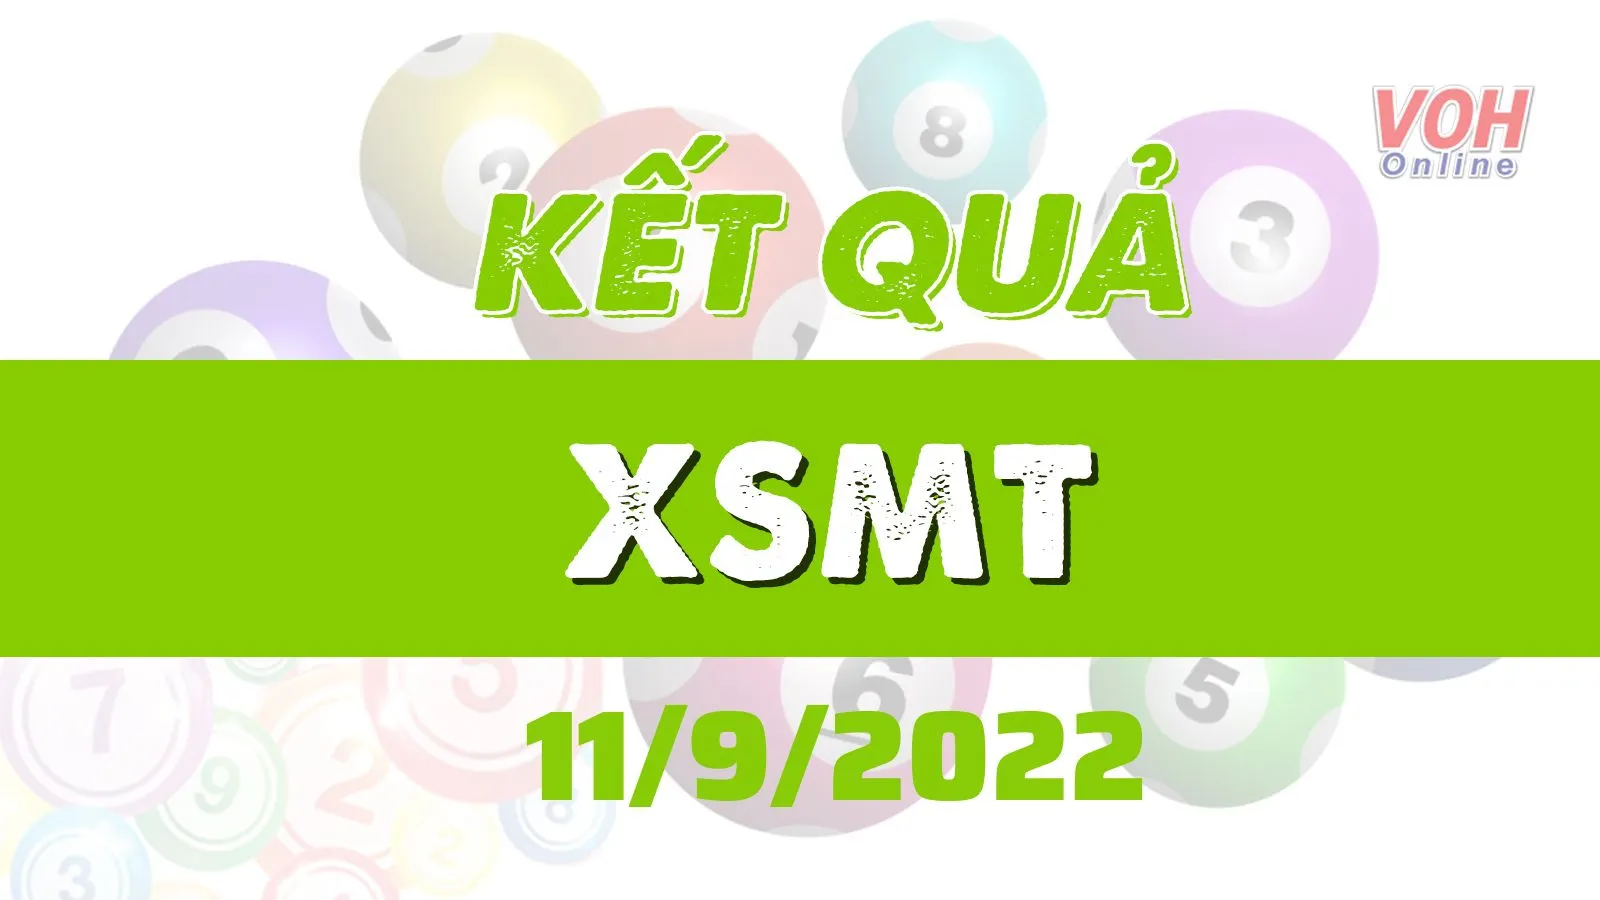 Xổ số miền Trung hôm nay, XSMT 11/9, SXMT 11/9/2022 - Kết quả xổ số ngày 11 tháng 9